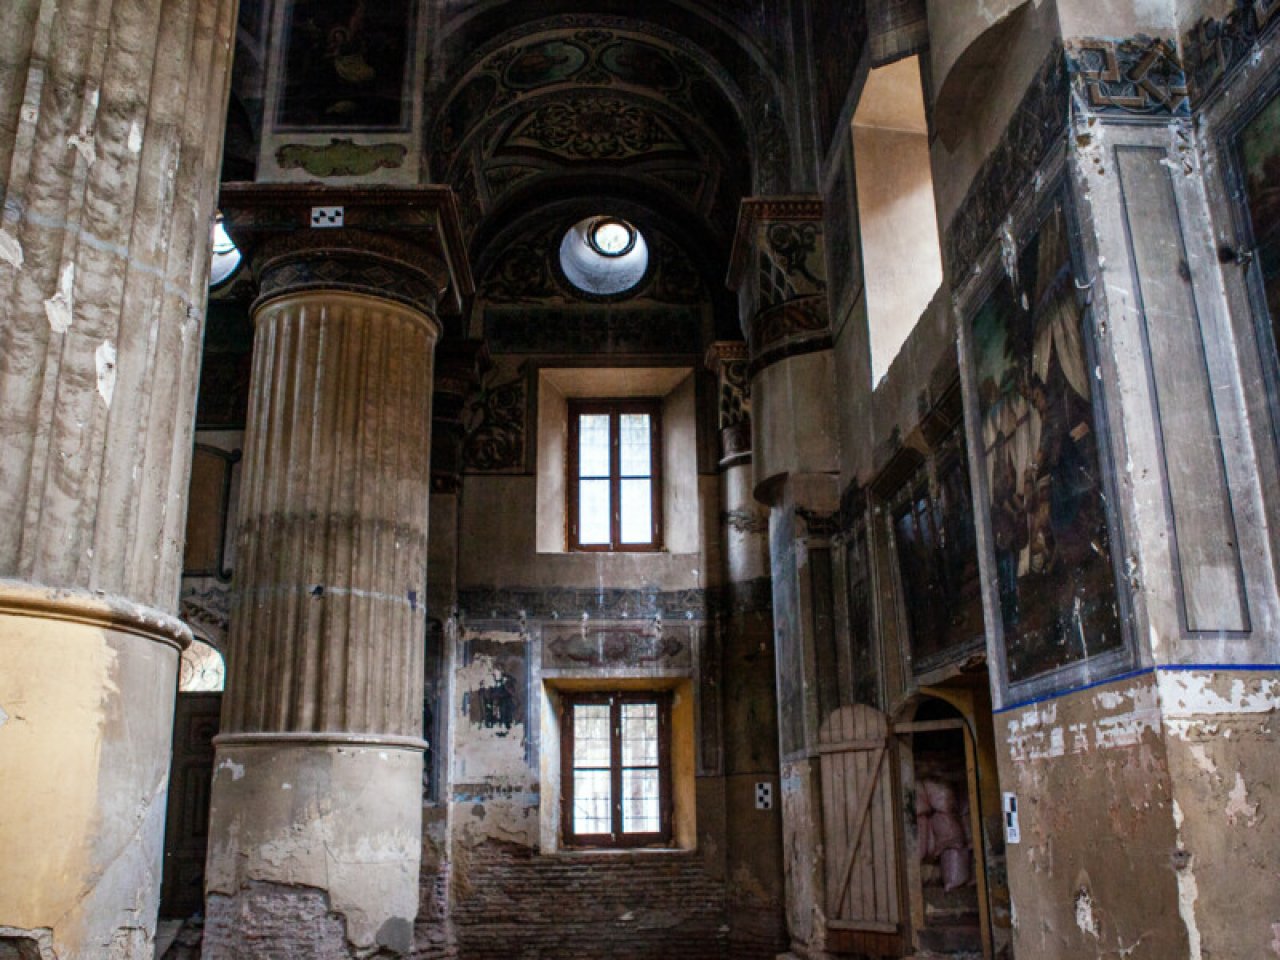 ТБИЛИСИ: Сокровища нации. Как реставрировали древнюю архитектуру в Тбилиси-22